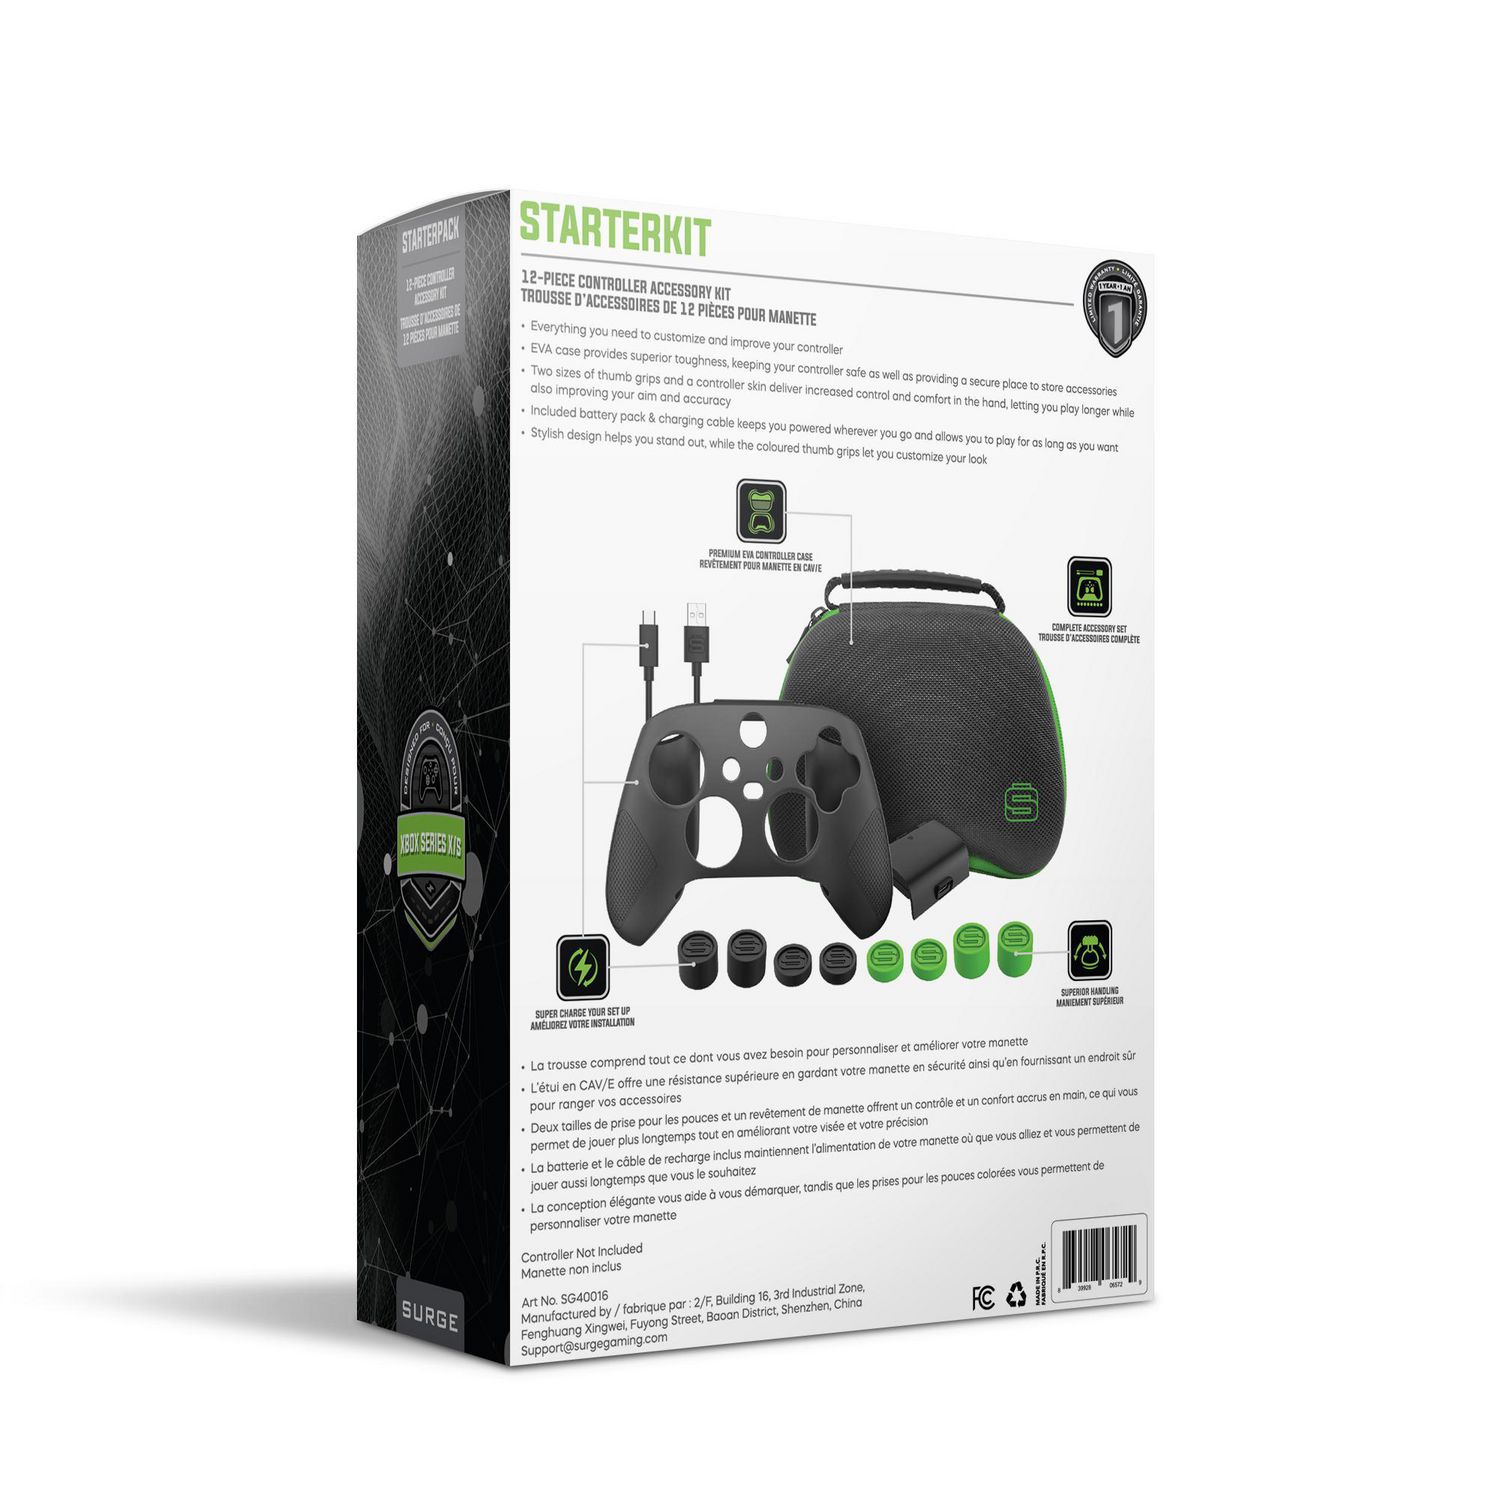 Accessoires - Xbox Series X - Tous les accessoires Xbox SX - PlayerOne